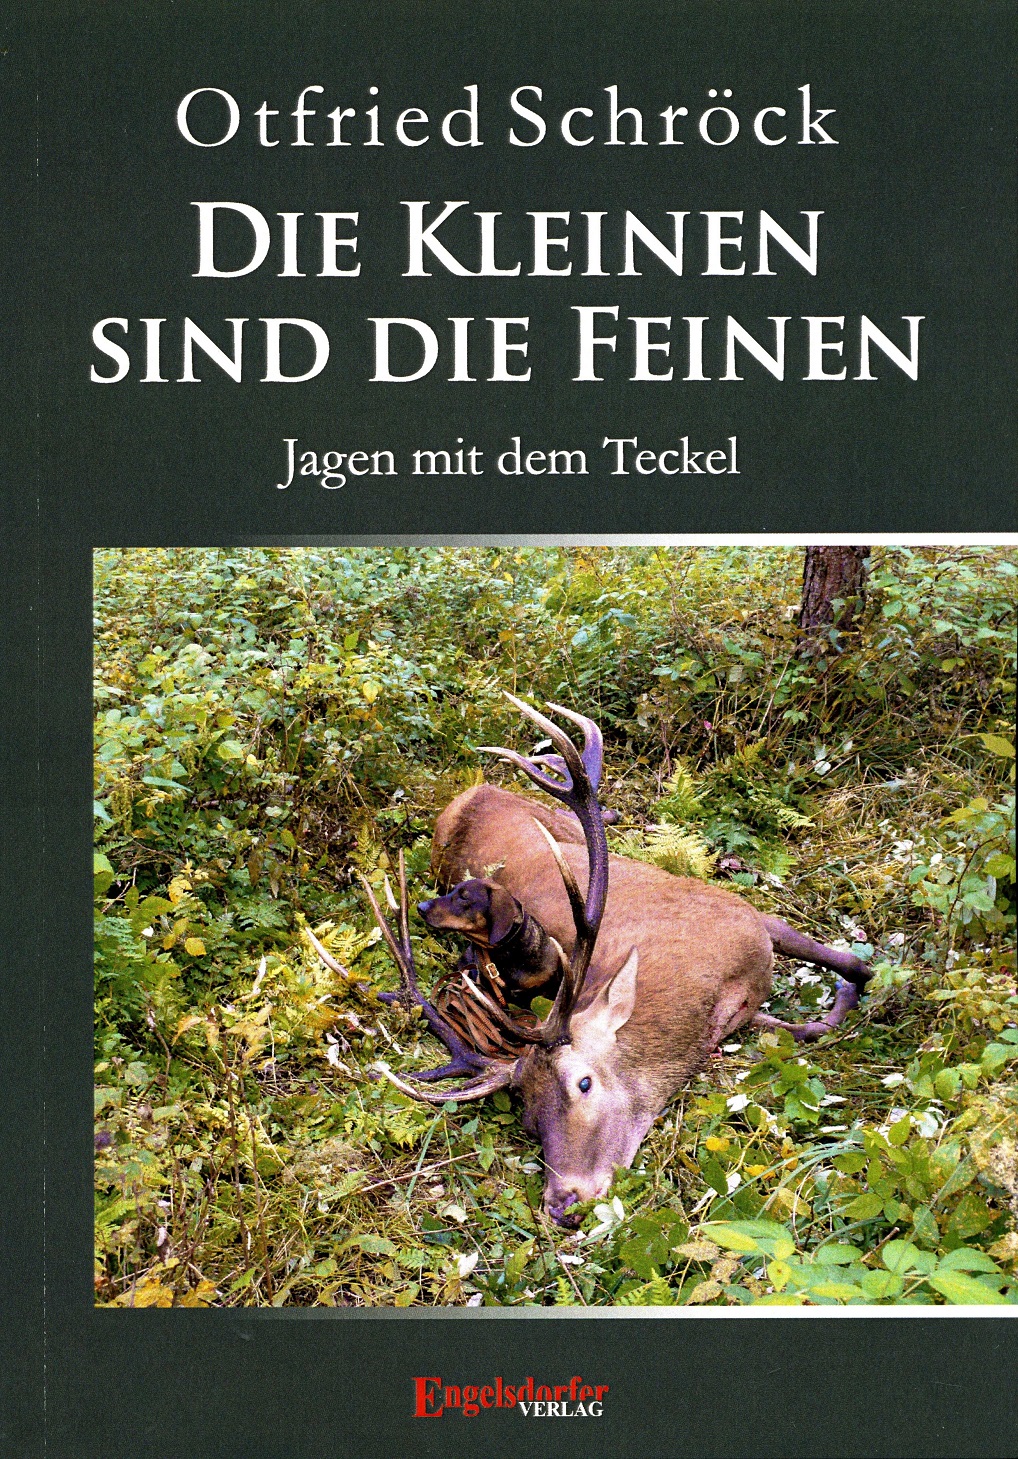 Cover-Teckel1